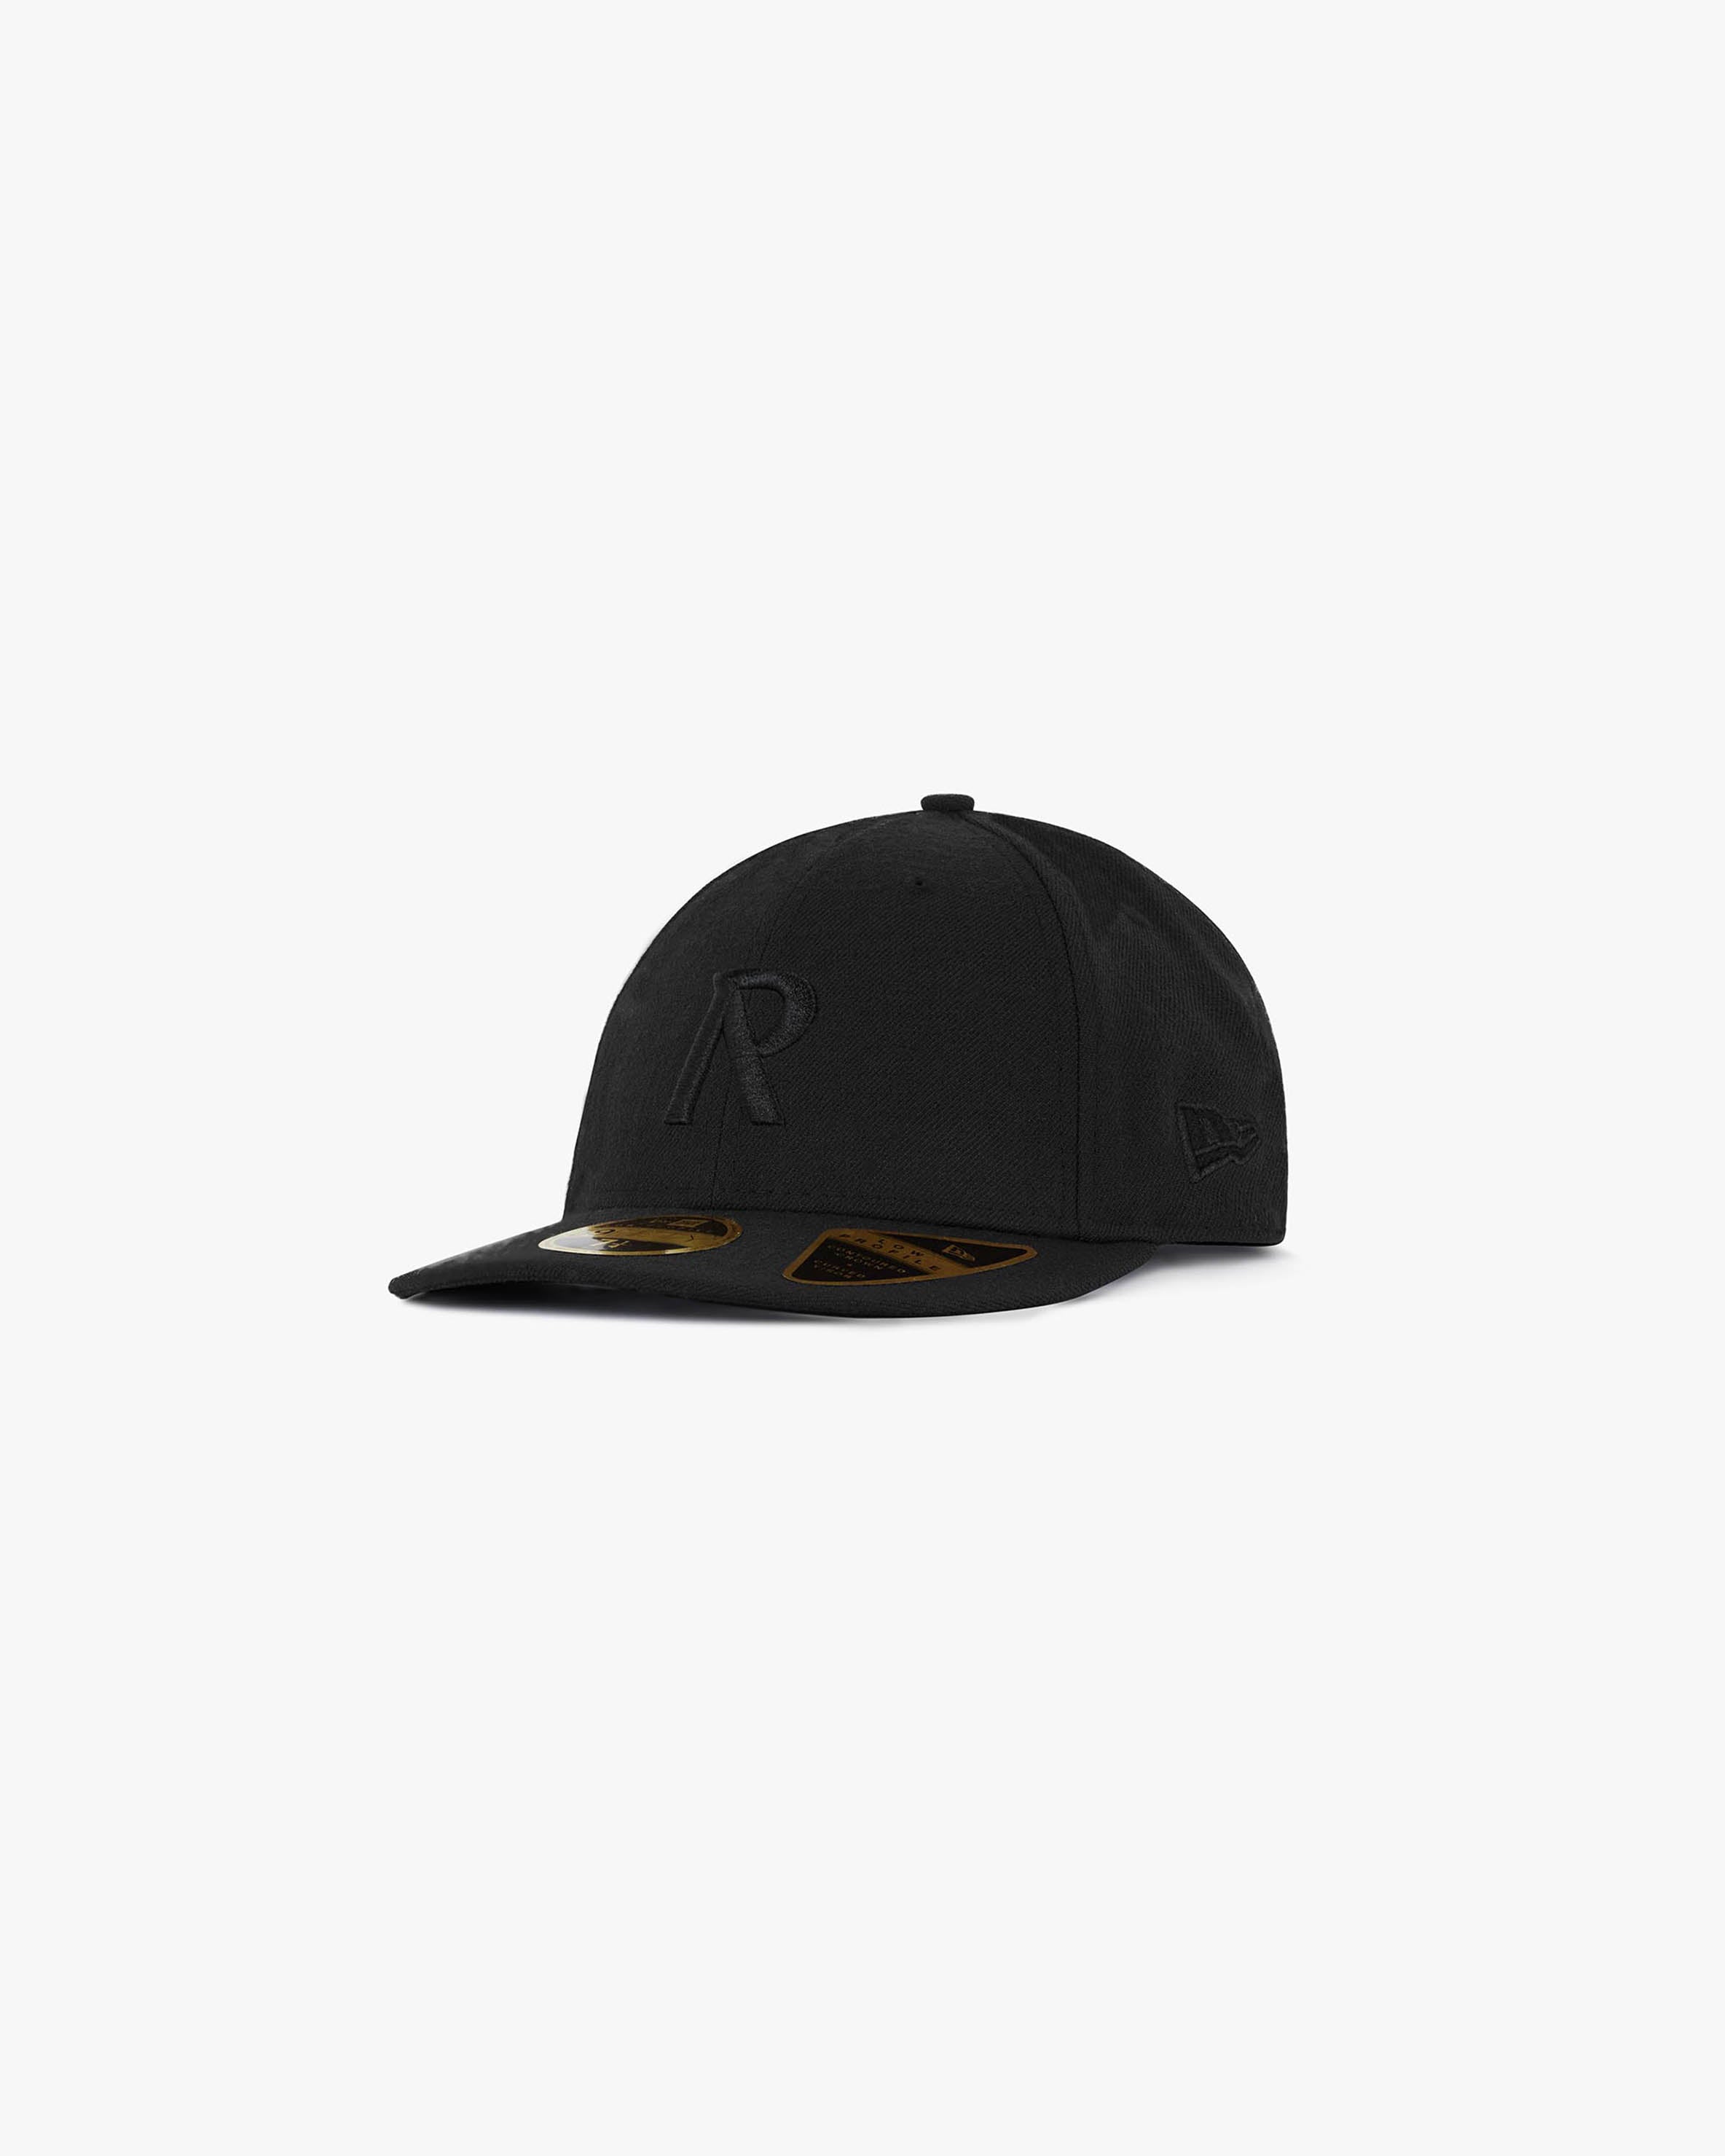 Initial New Era 59Fifty Cap | All Black Accessories FW22 | Represent Clo